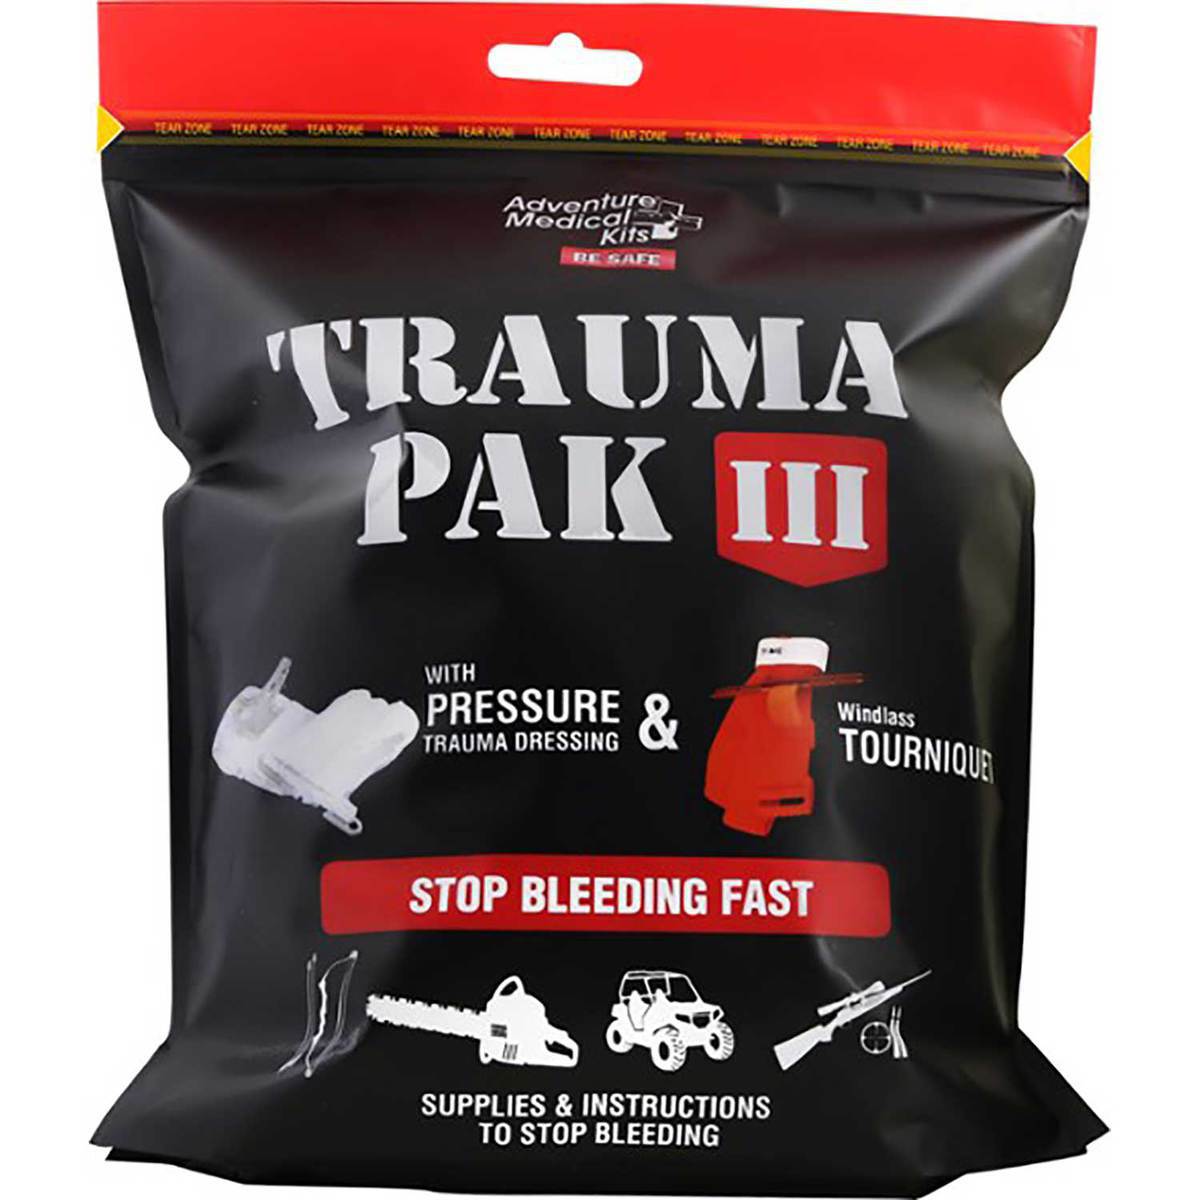 https://www.sportsmans.com/medias/adventure-medical-kits-trauma-pak-iii-1663346-1.jpg?context=bWFzdGVyfGltYWdlc3w5Mzg4MnxpbWFnZS9qcGVnfGltYWdlcy9oOTIvaGRmLzk3OTExNzI5Njg0NzguanBnfDZjOGUwMzBmYjNmMjIxM2UxODU1ZGIxMjNhMzIwODYwYzY4NGJmM2QwY2Q1OTI0NGQwNWE0M2ZmMTJmNDFlMGU